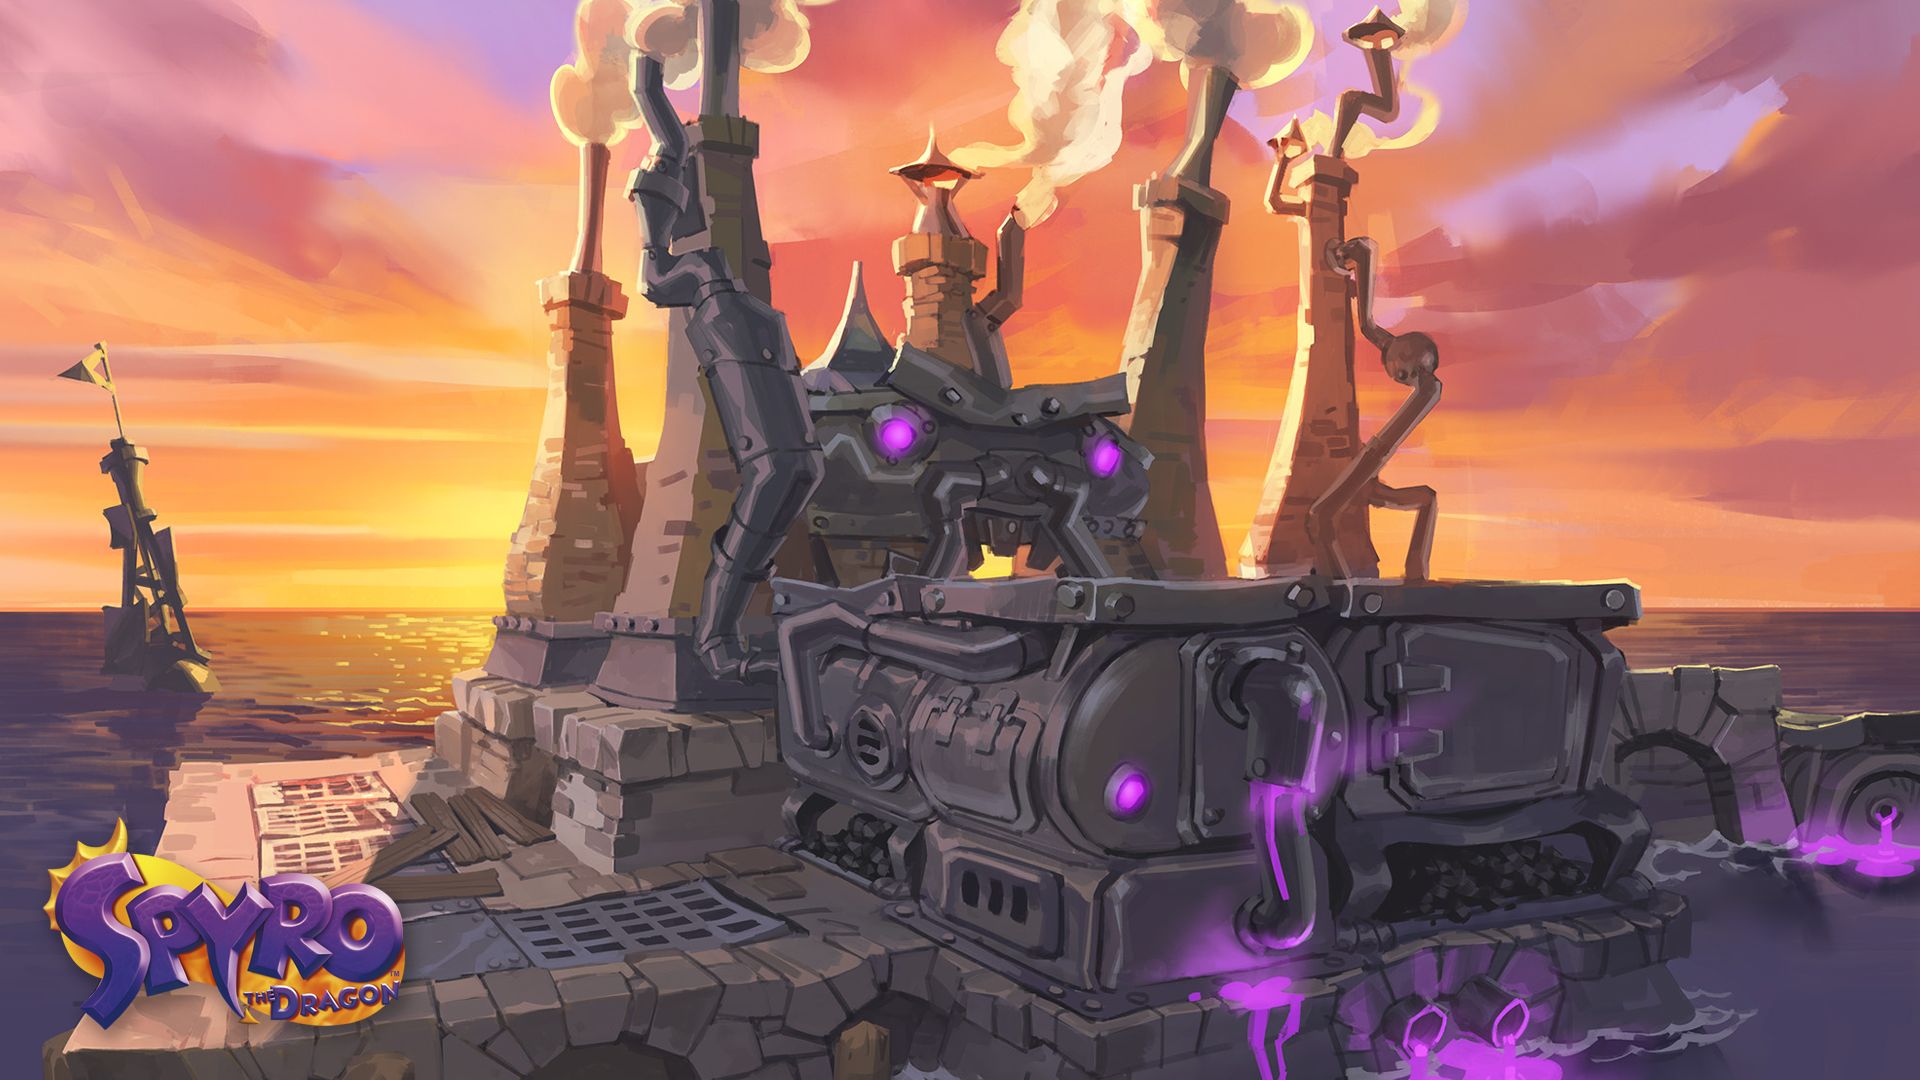 Baixar papel de parede para celular de Videogame, Spyro Reignited Trilogy gratuito.